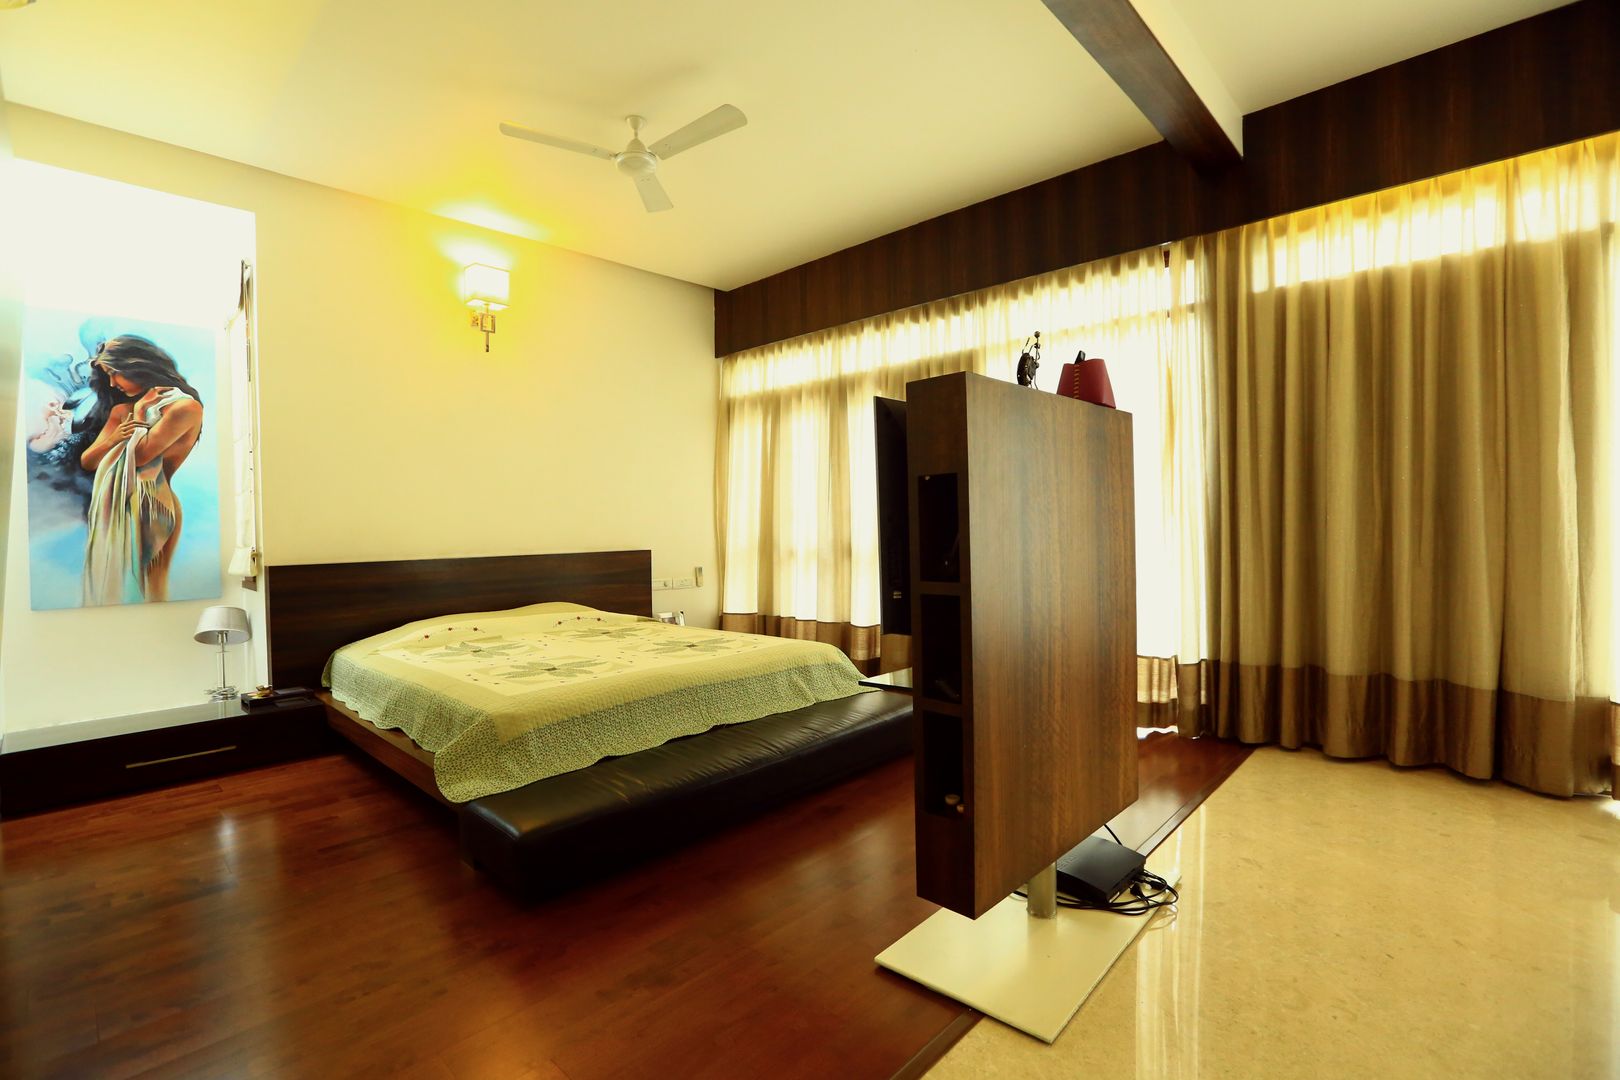 Residence at Sarjapur Road, Space Trend Space Trend Dormitorios de estilo moderno